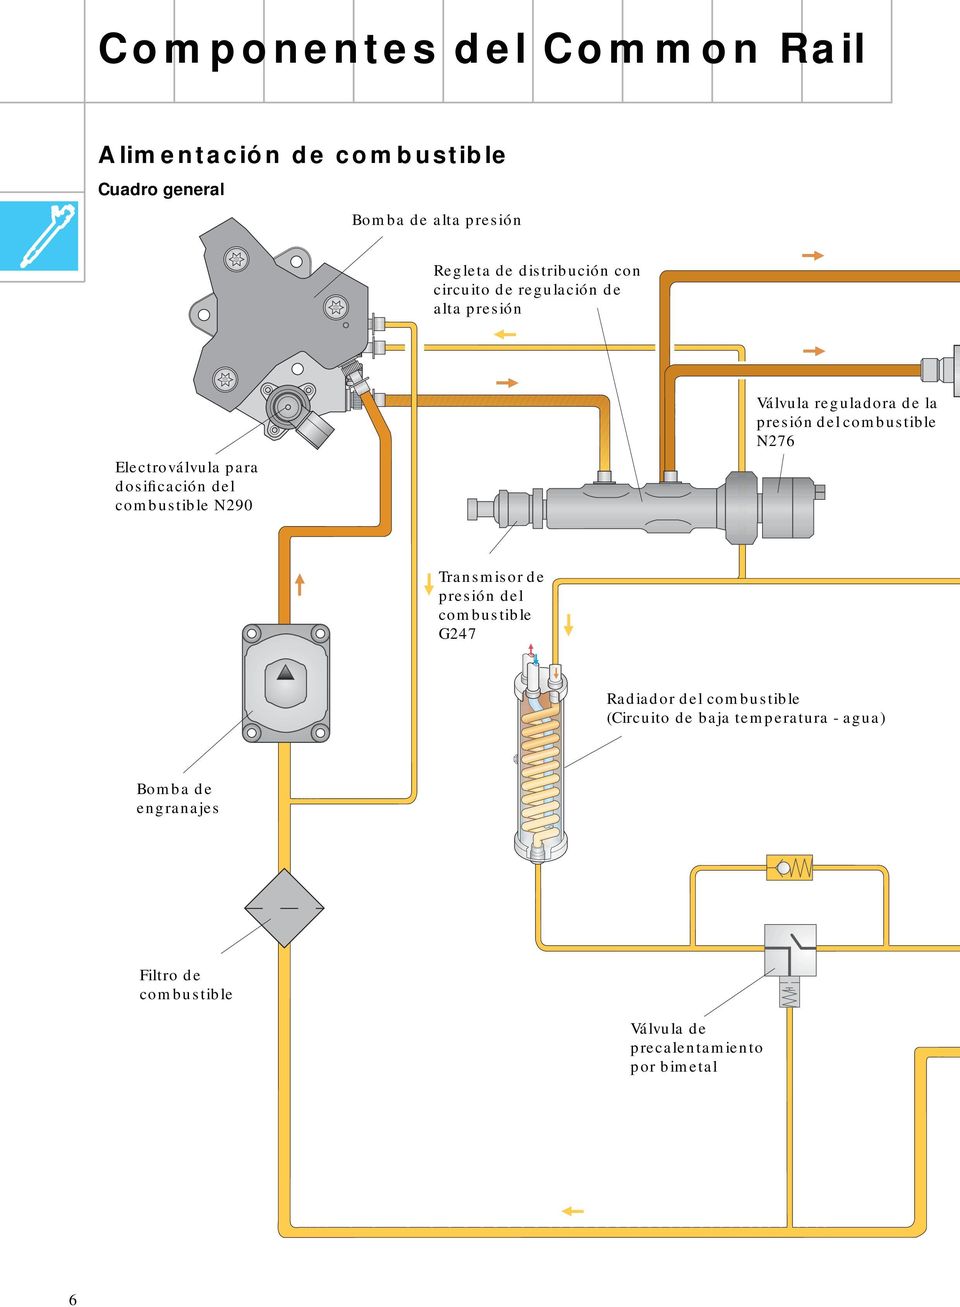 Válvula reguladora de la presión del combustible N276 Transmisor de presión del combustible G247 Radiador del